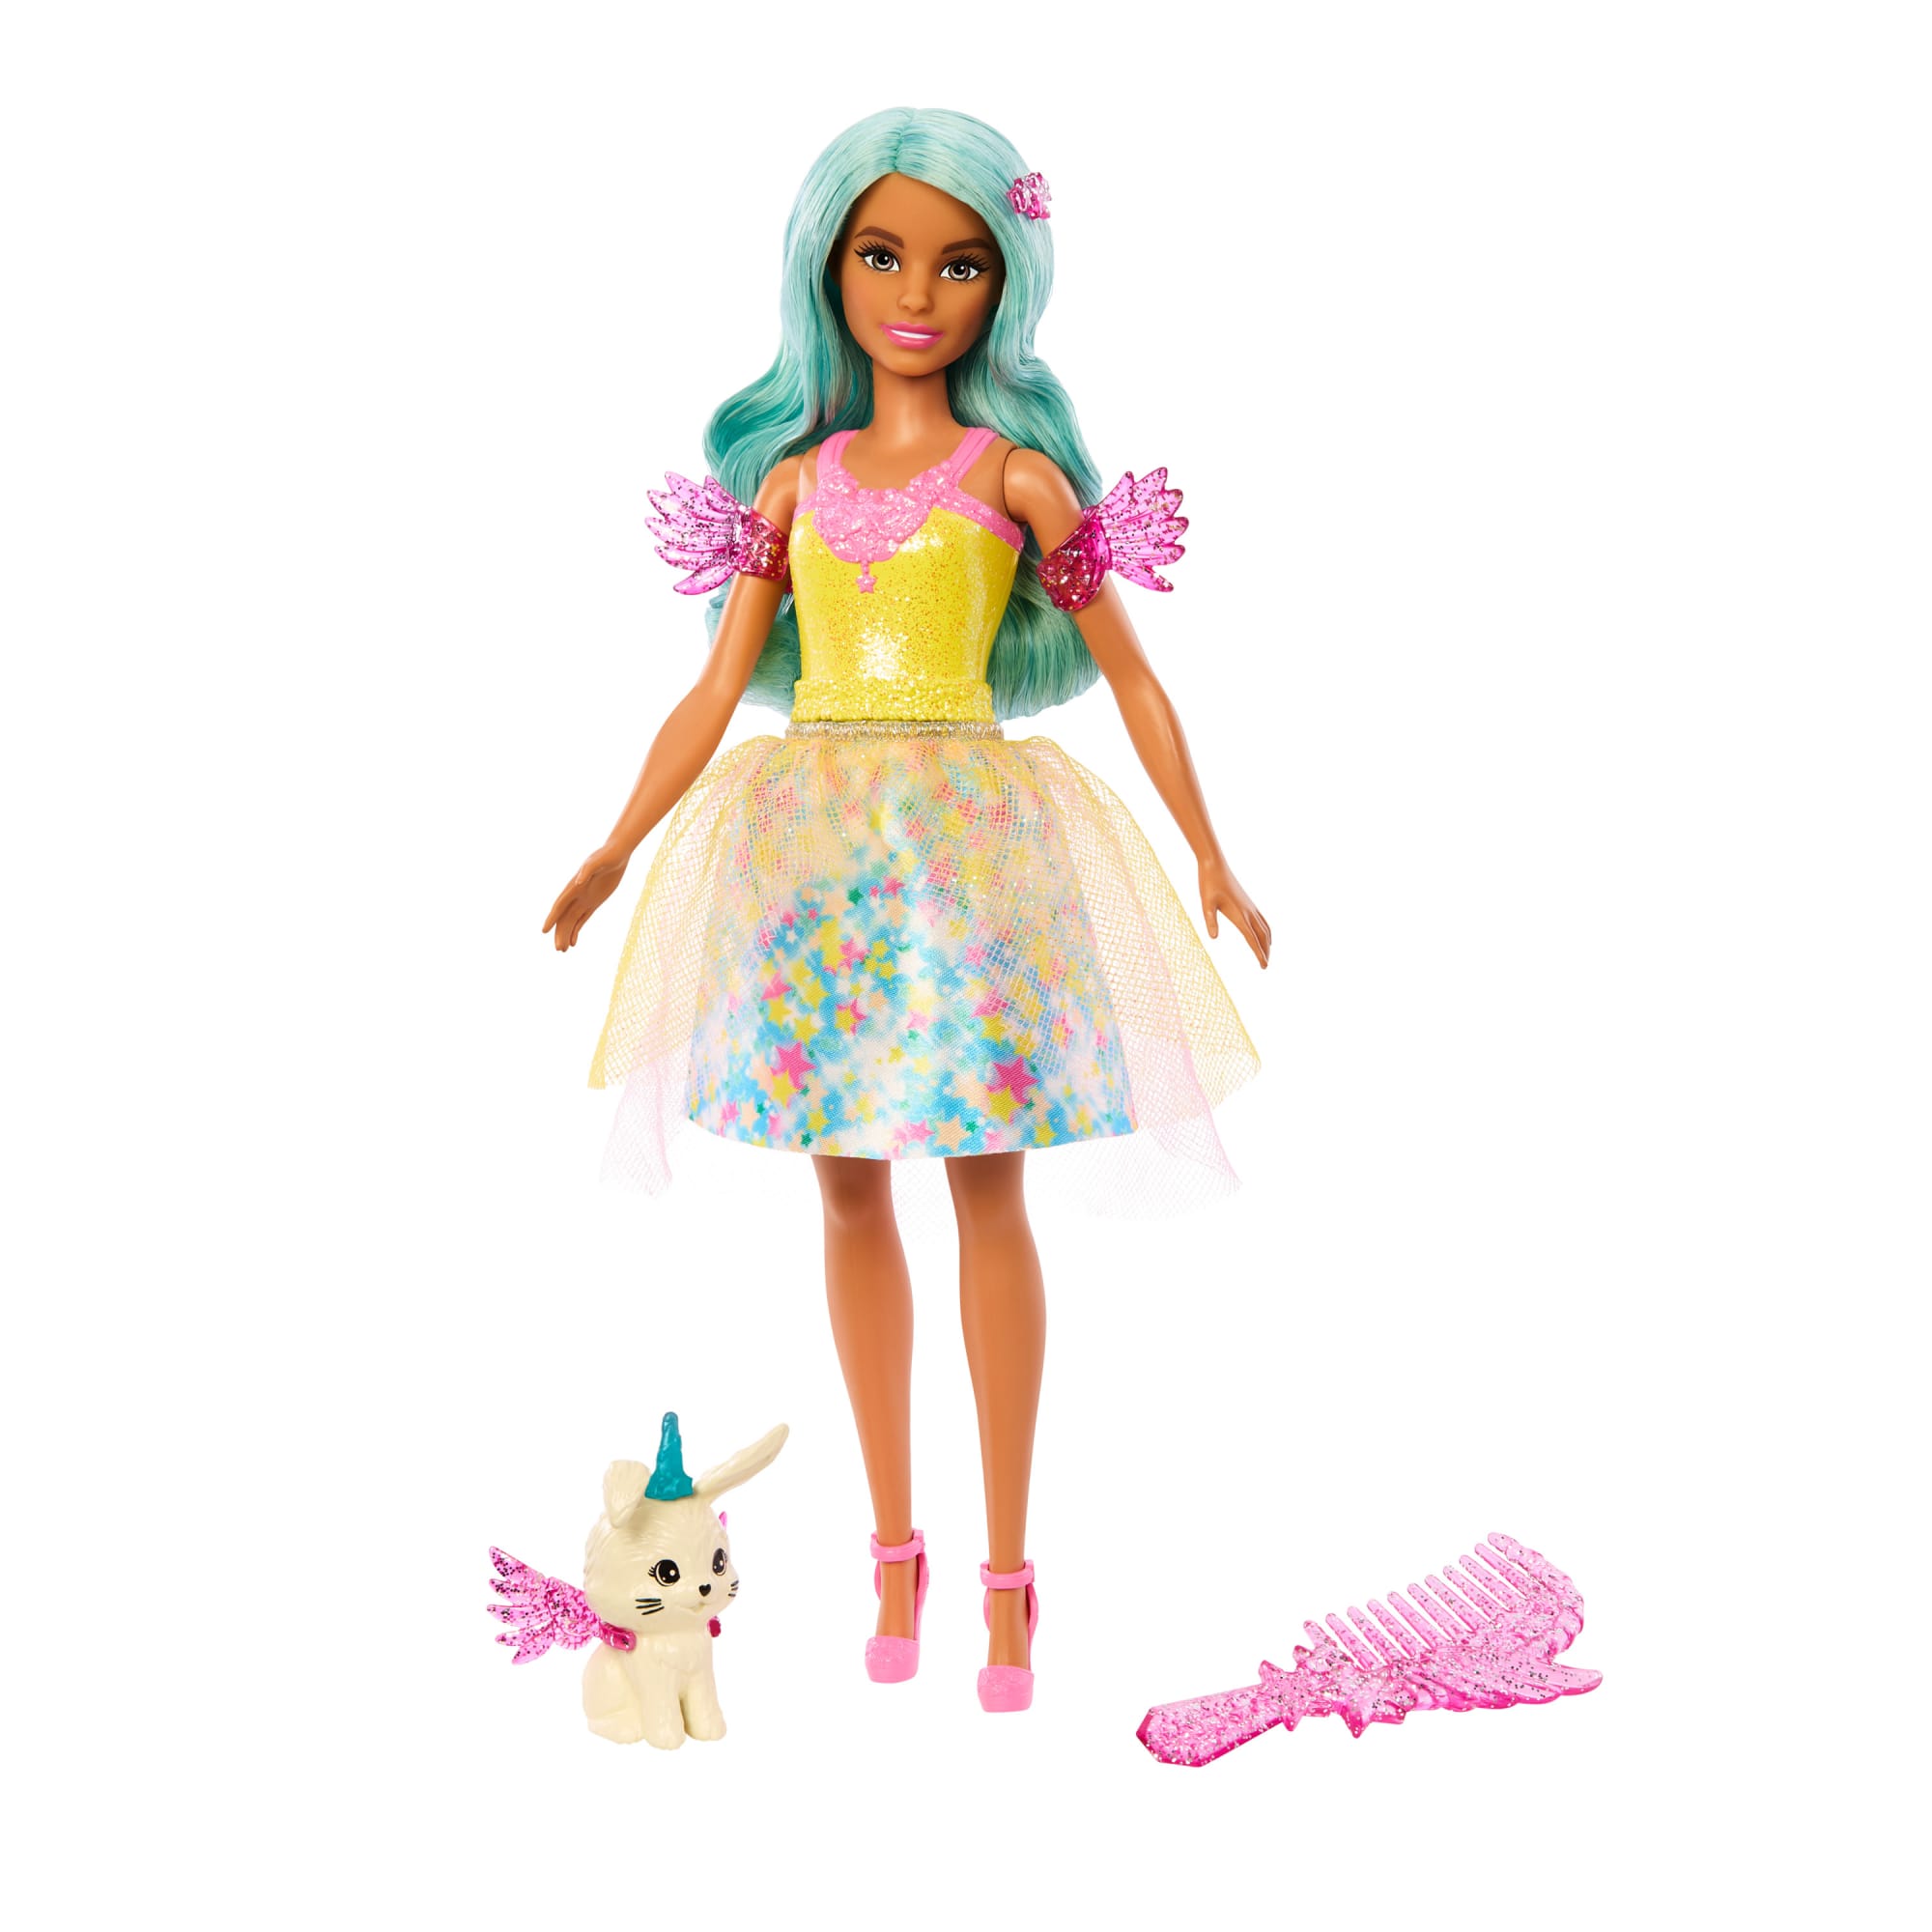 Unicorn-inspired Chelsea Barbie Doll | Mattel